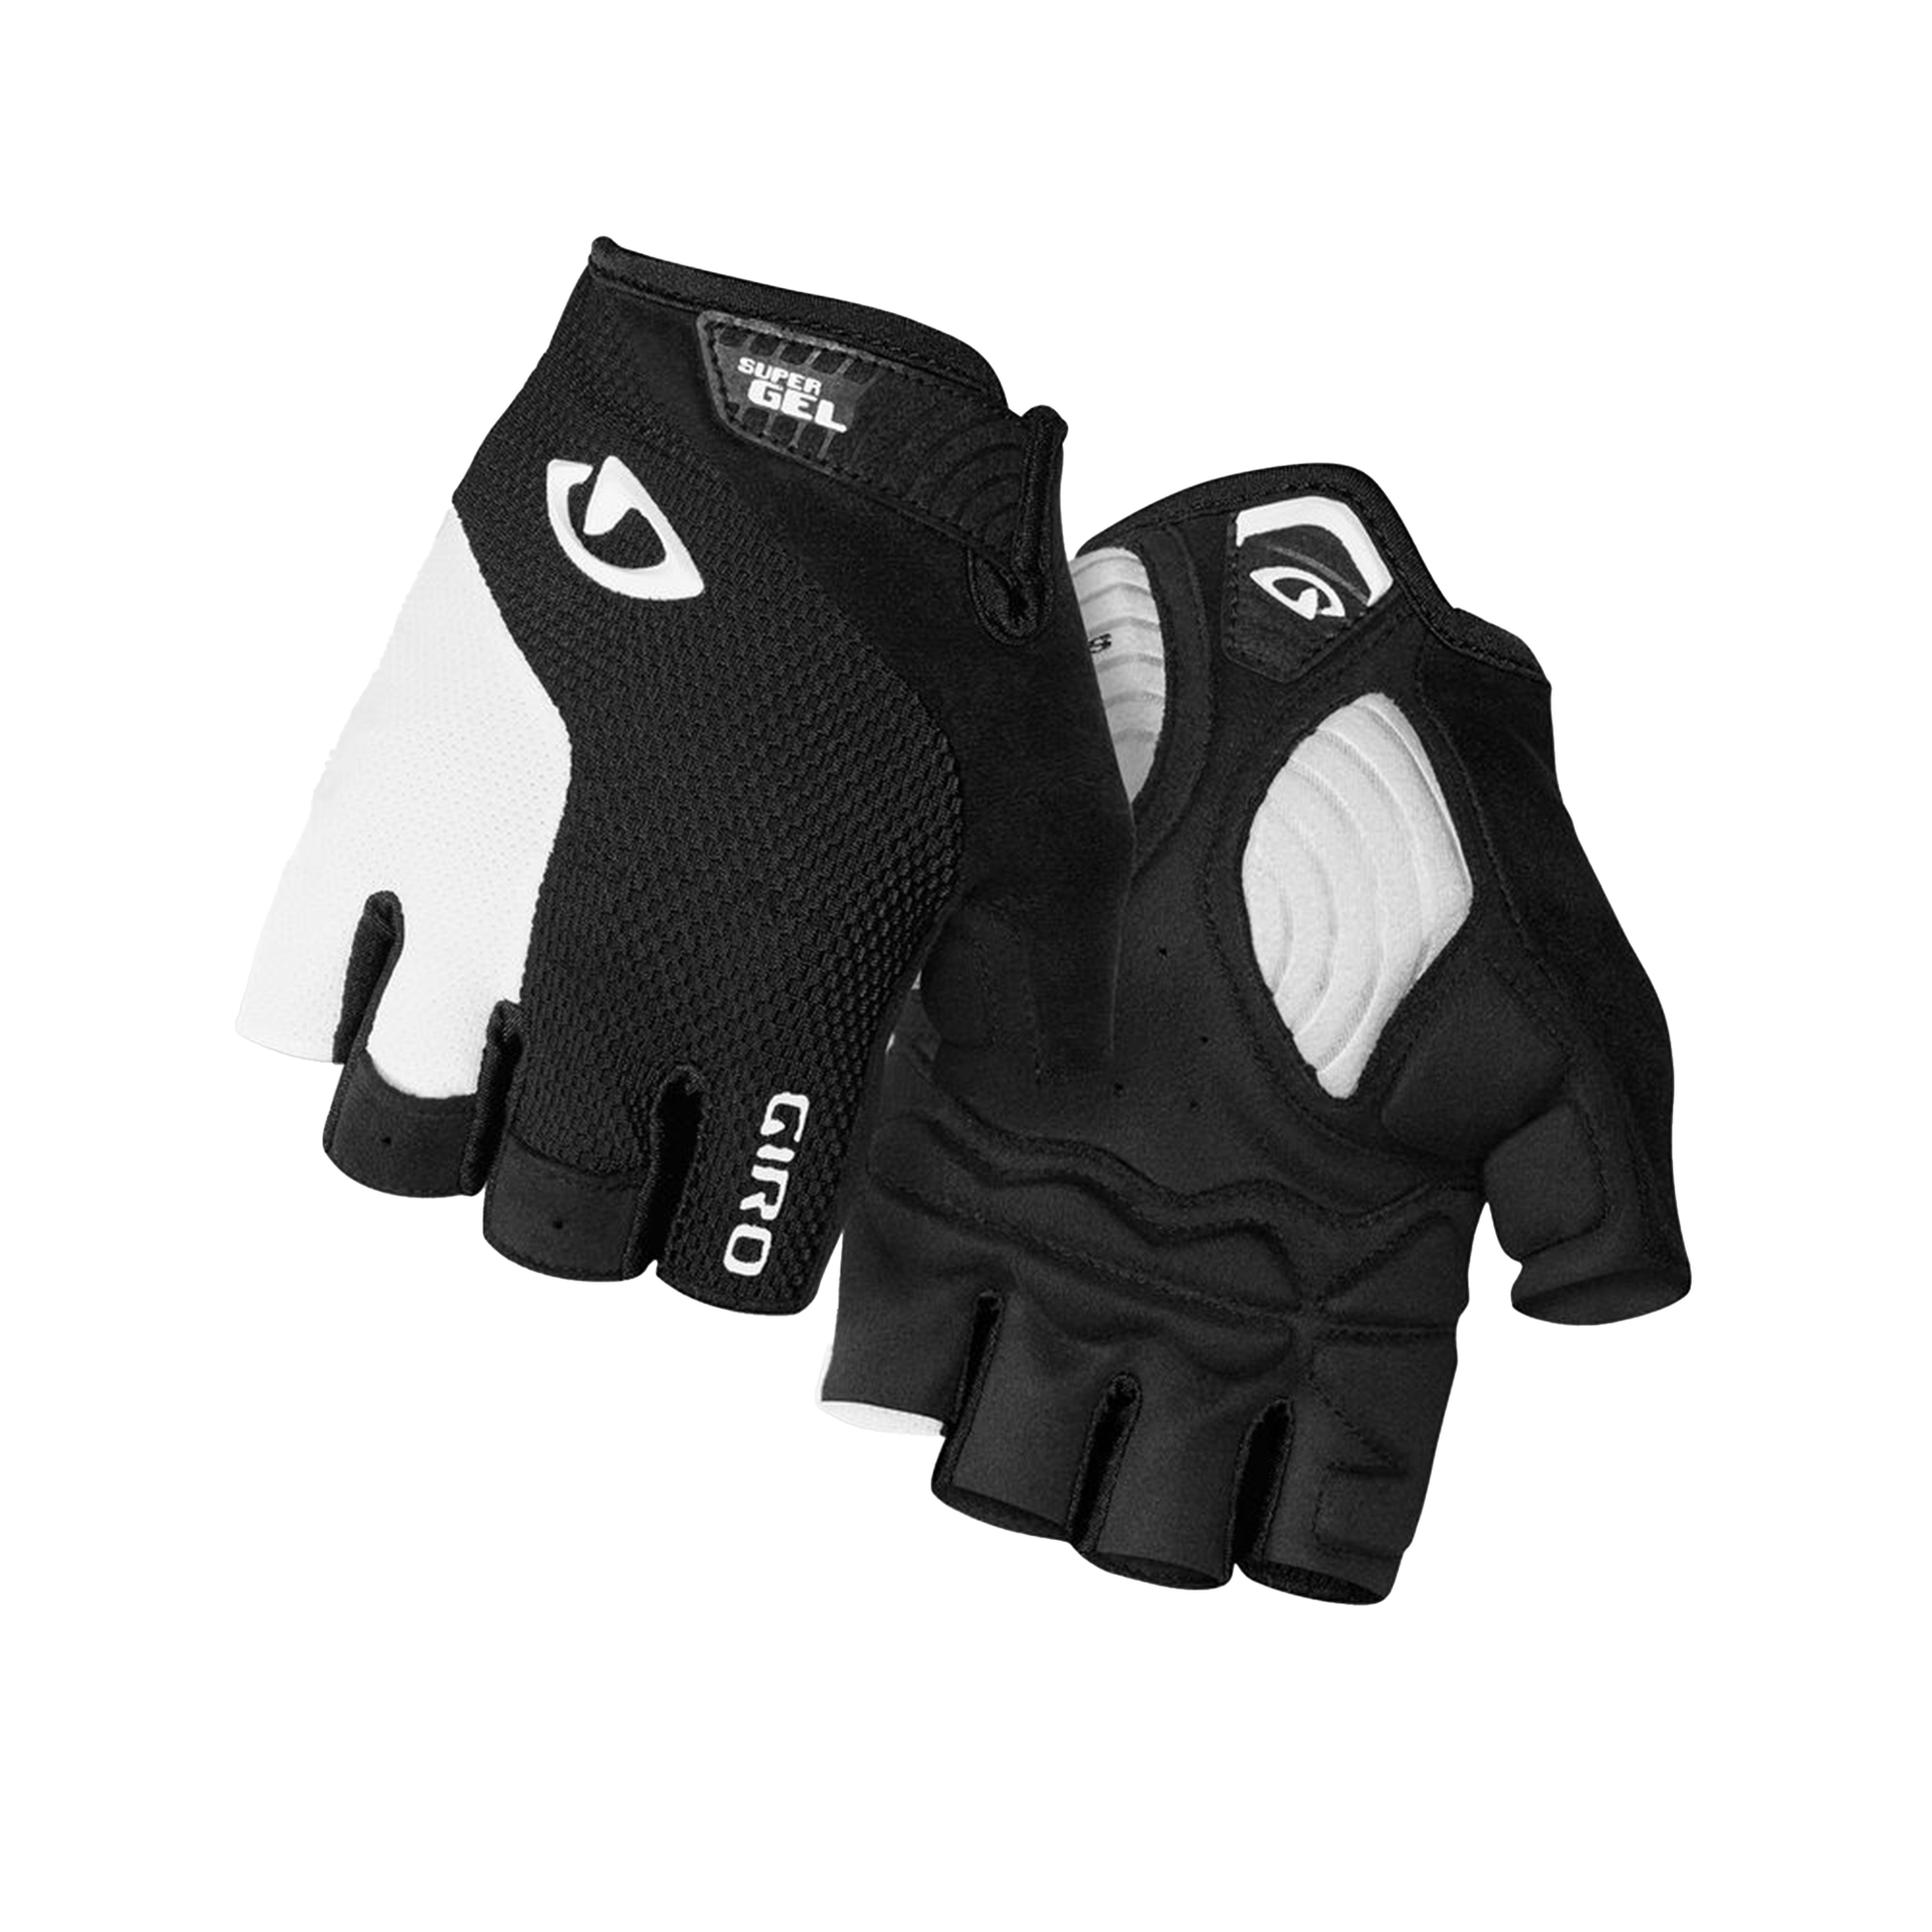 Giro Men's Strade Dure SG Glove Black White Bike Gloves